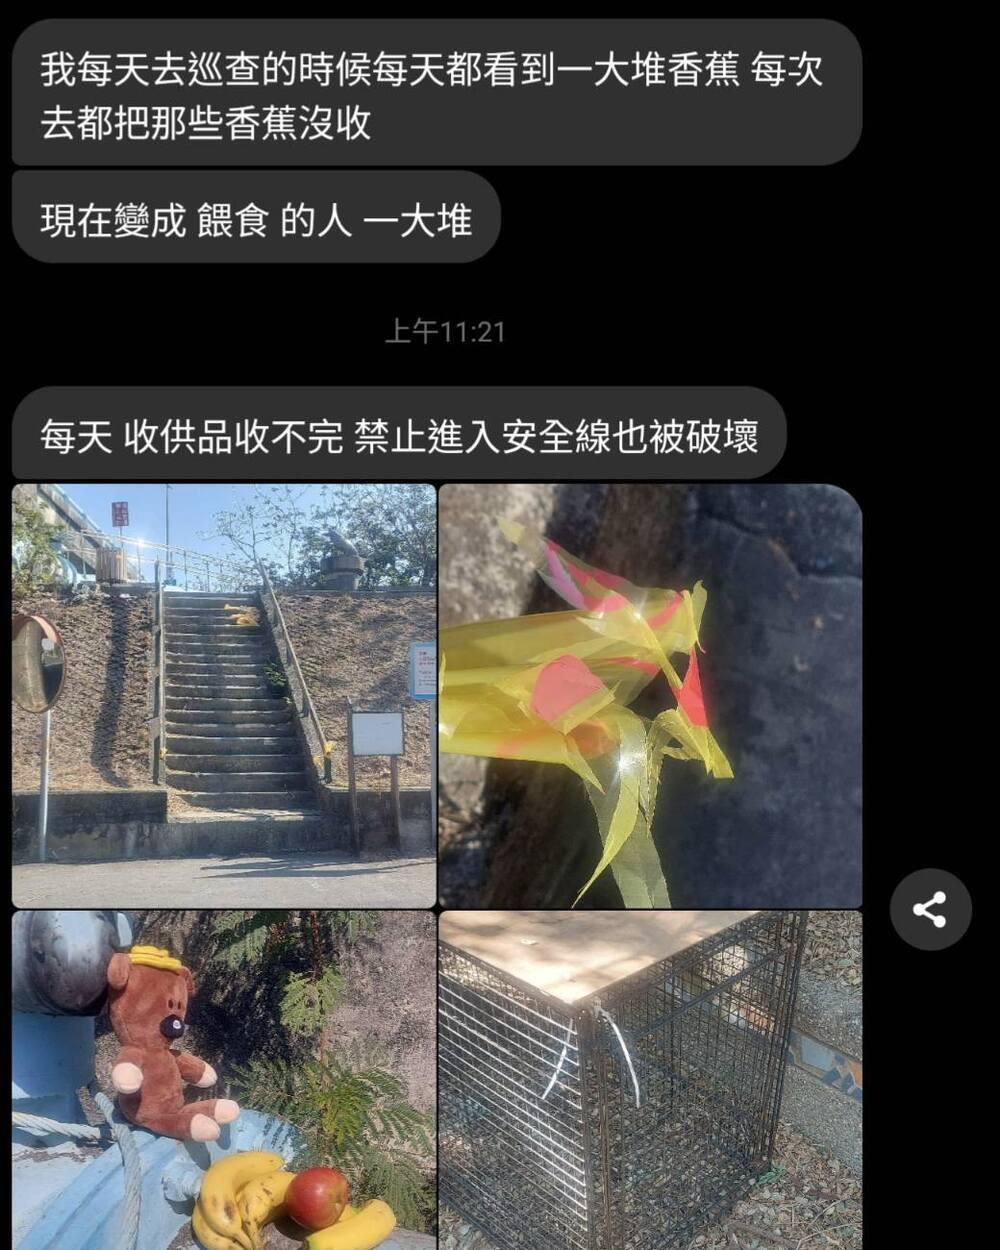 圖片來源 台灣獼猴共存推廣協會